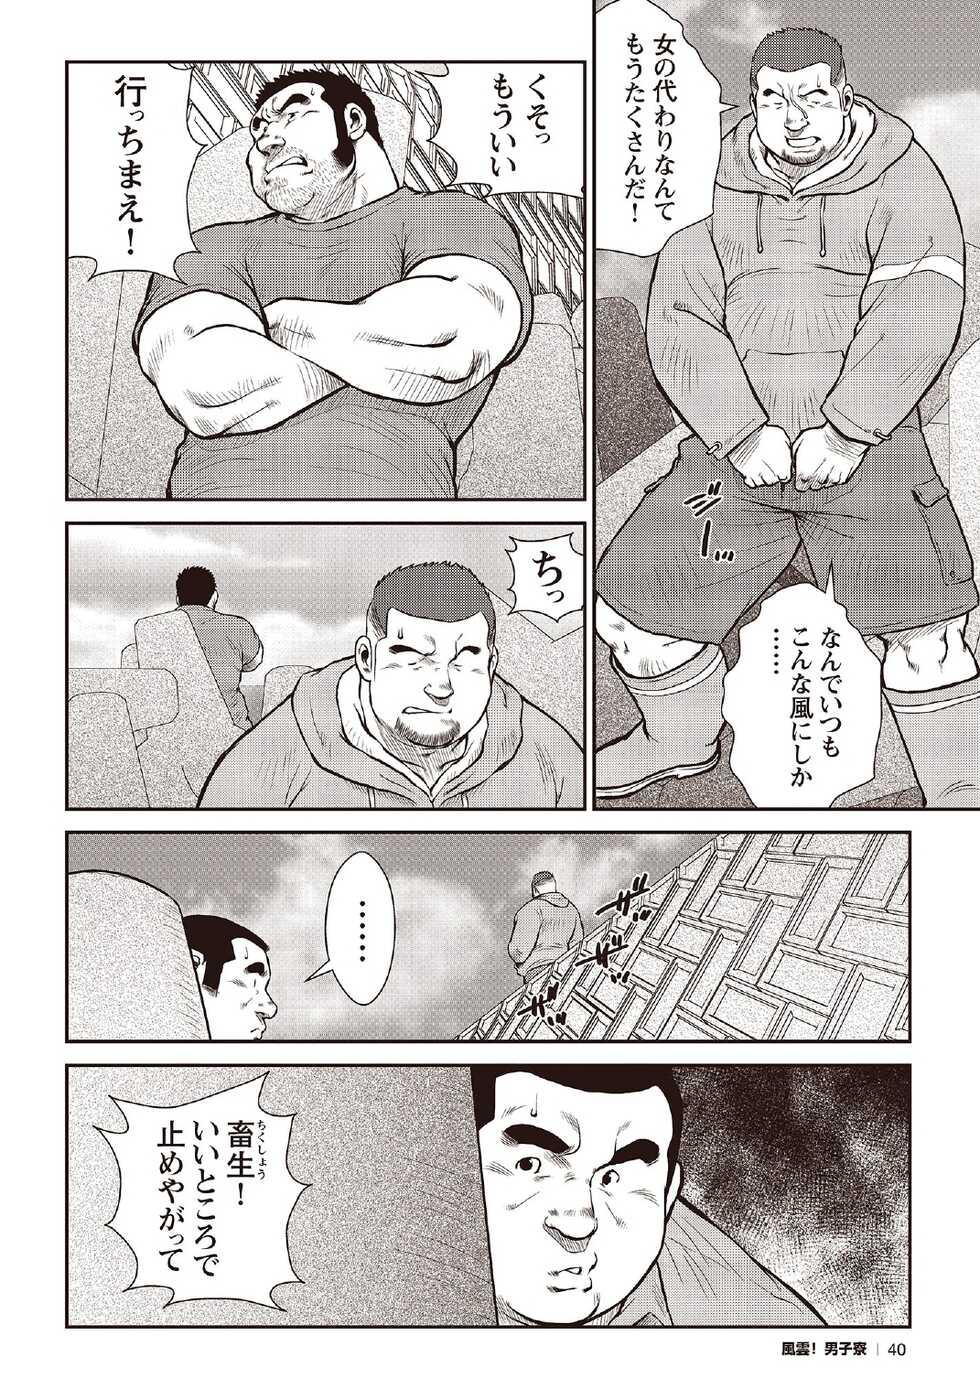 [Ebisubashi Seizou] Ebisubashi Seizou Tanpen Manga Shuu 2 Fuuun! Danshi Ryou [Bunsatsuban] PART 2 Bousou Hantou Taifuu Zensen Ch. 1 + Ch. 2 [Digital] - Page 18